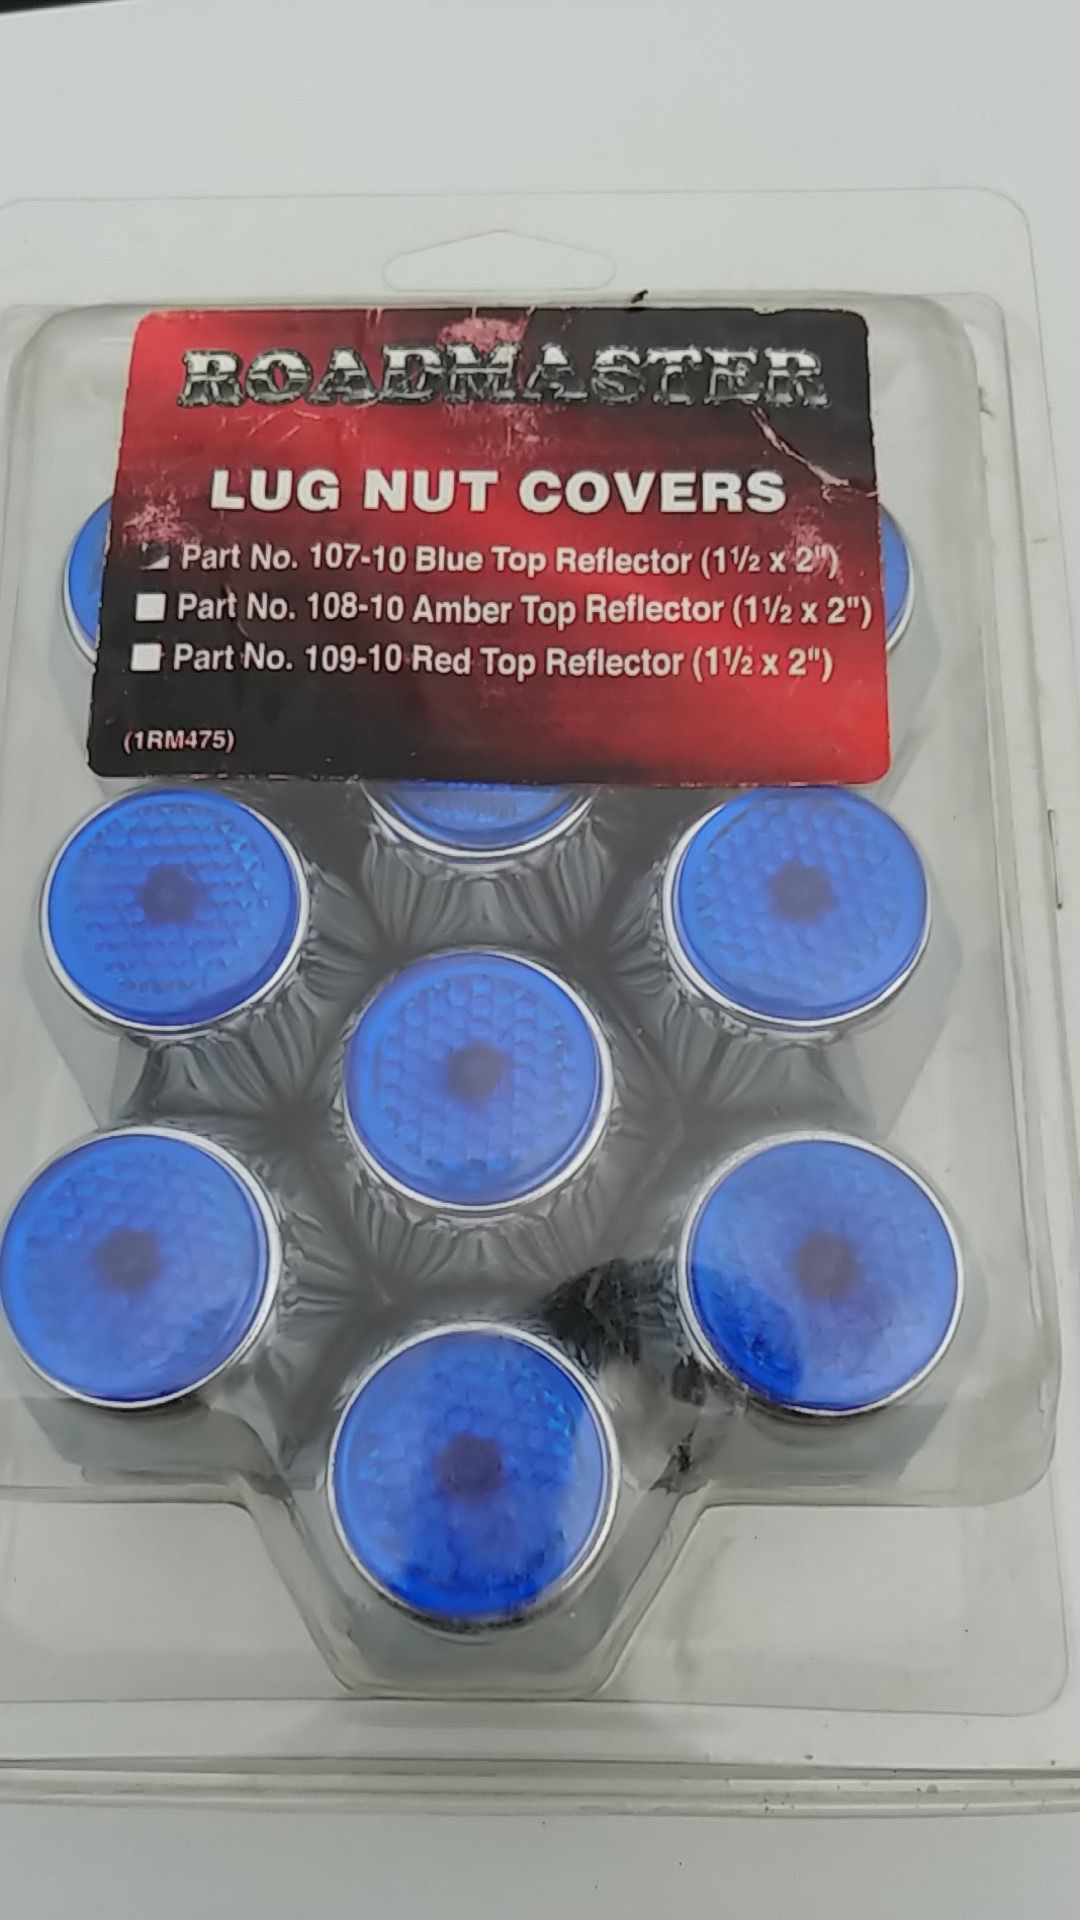 Lug nut covers